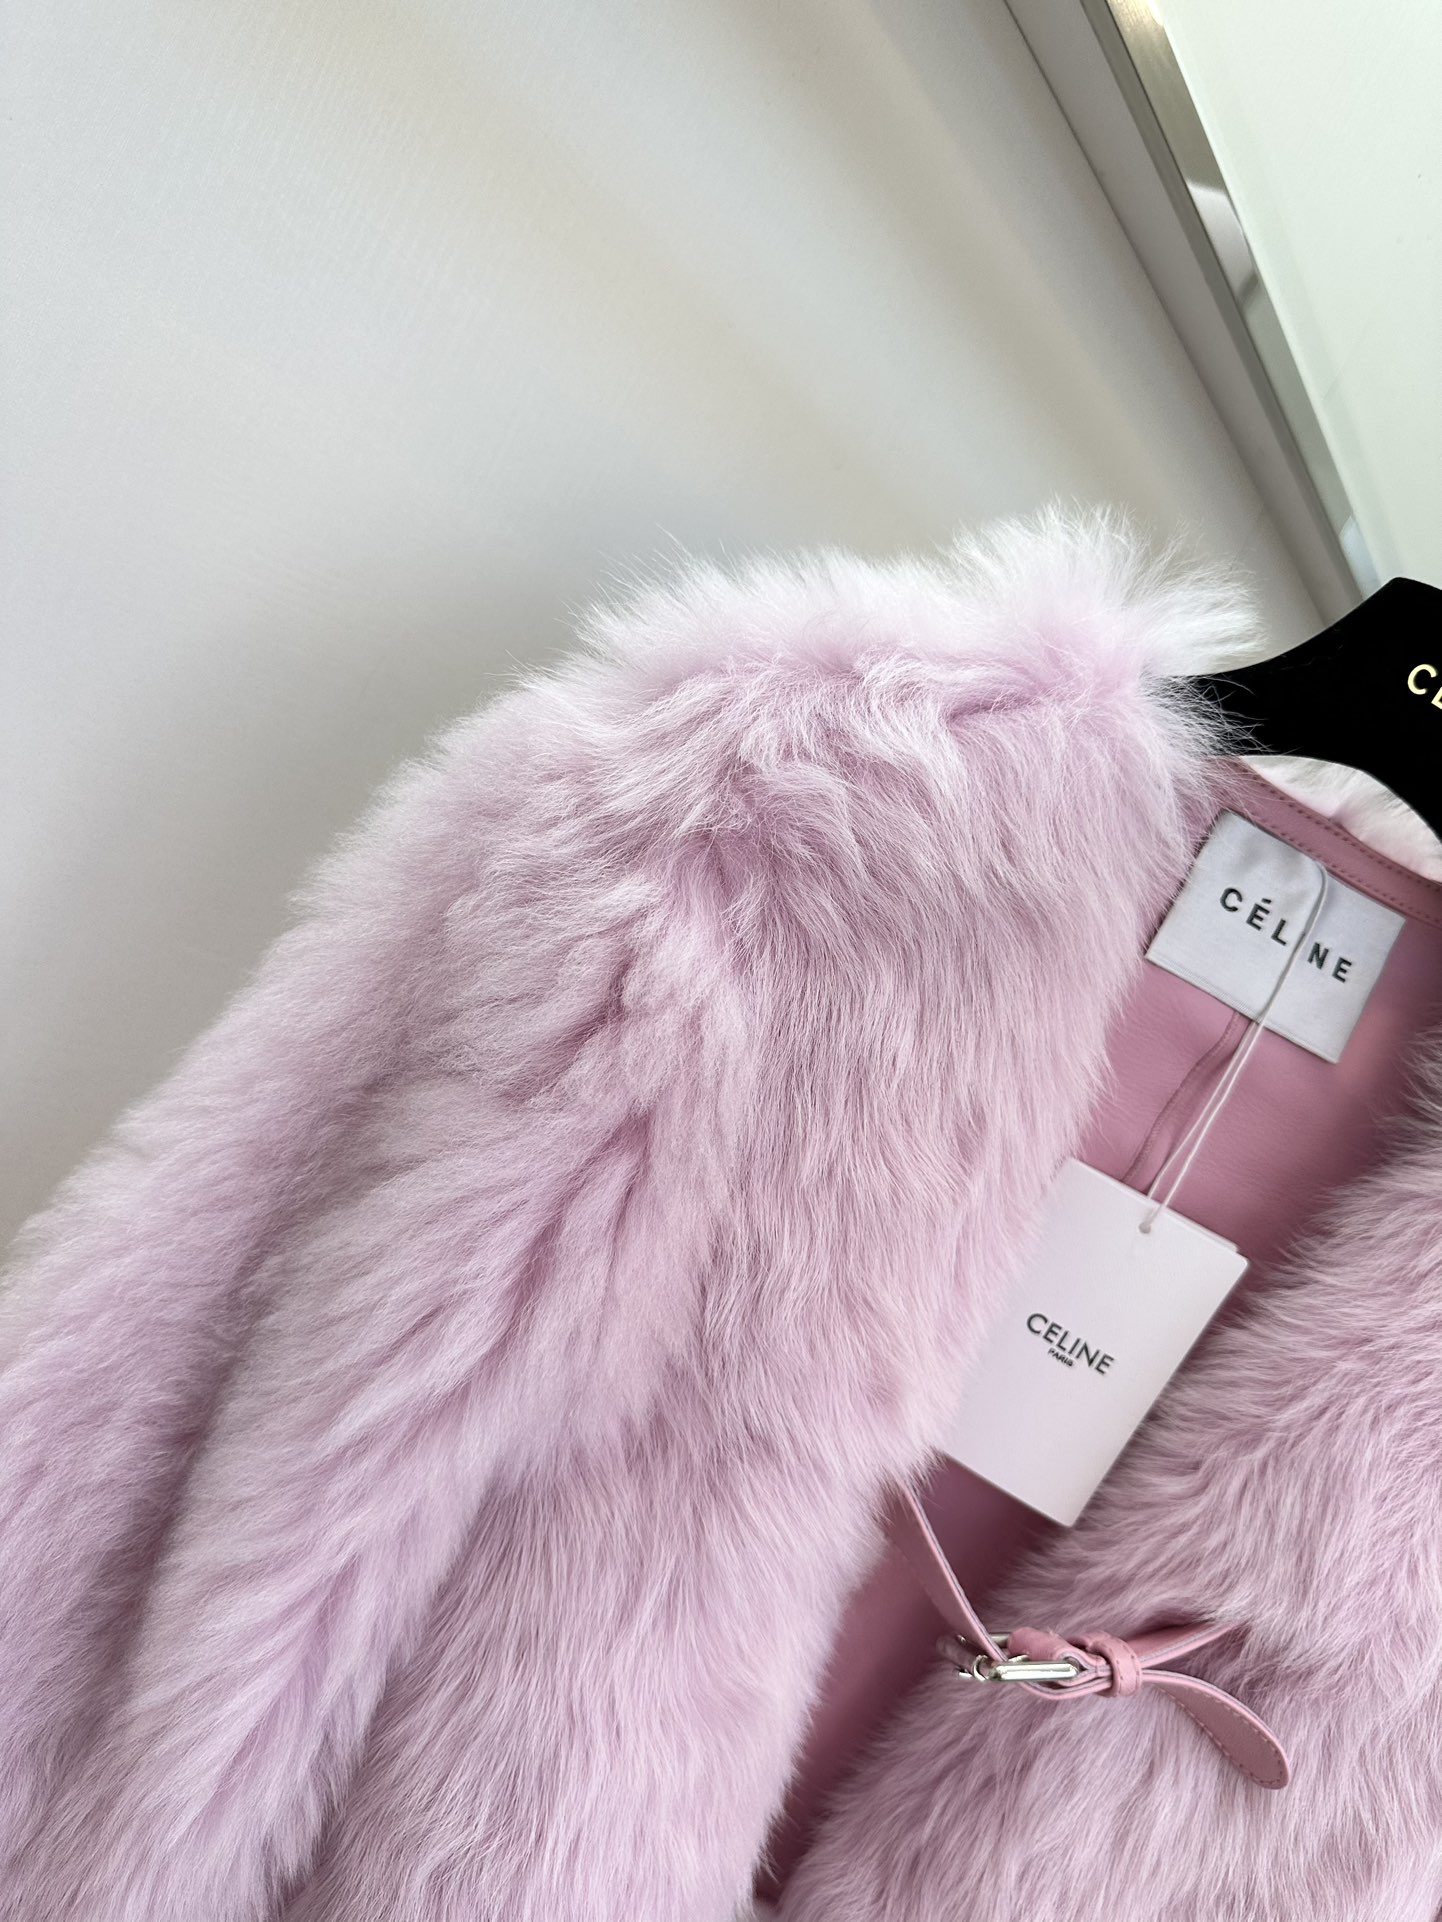 セリーヌ ジャンパー偽物 鮮やかな色 イタリア製 高級品 もこもこ 暖かい ファッション レディース 3色可選 ピンク_2